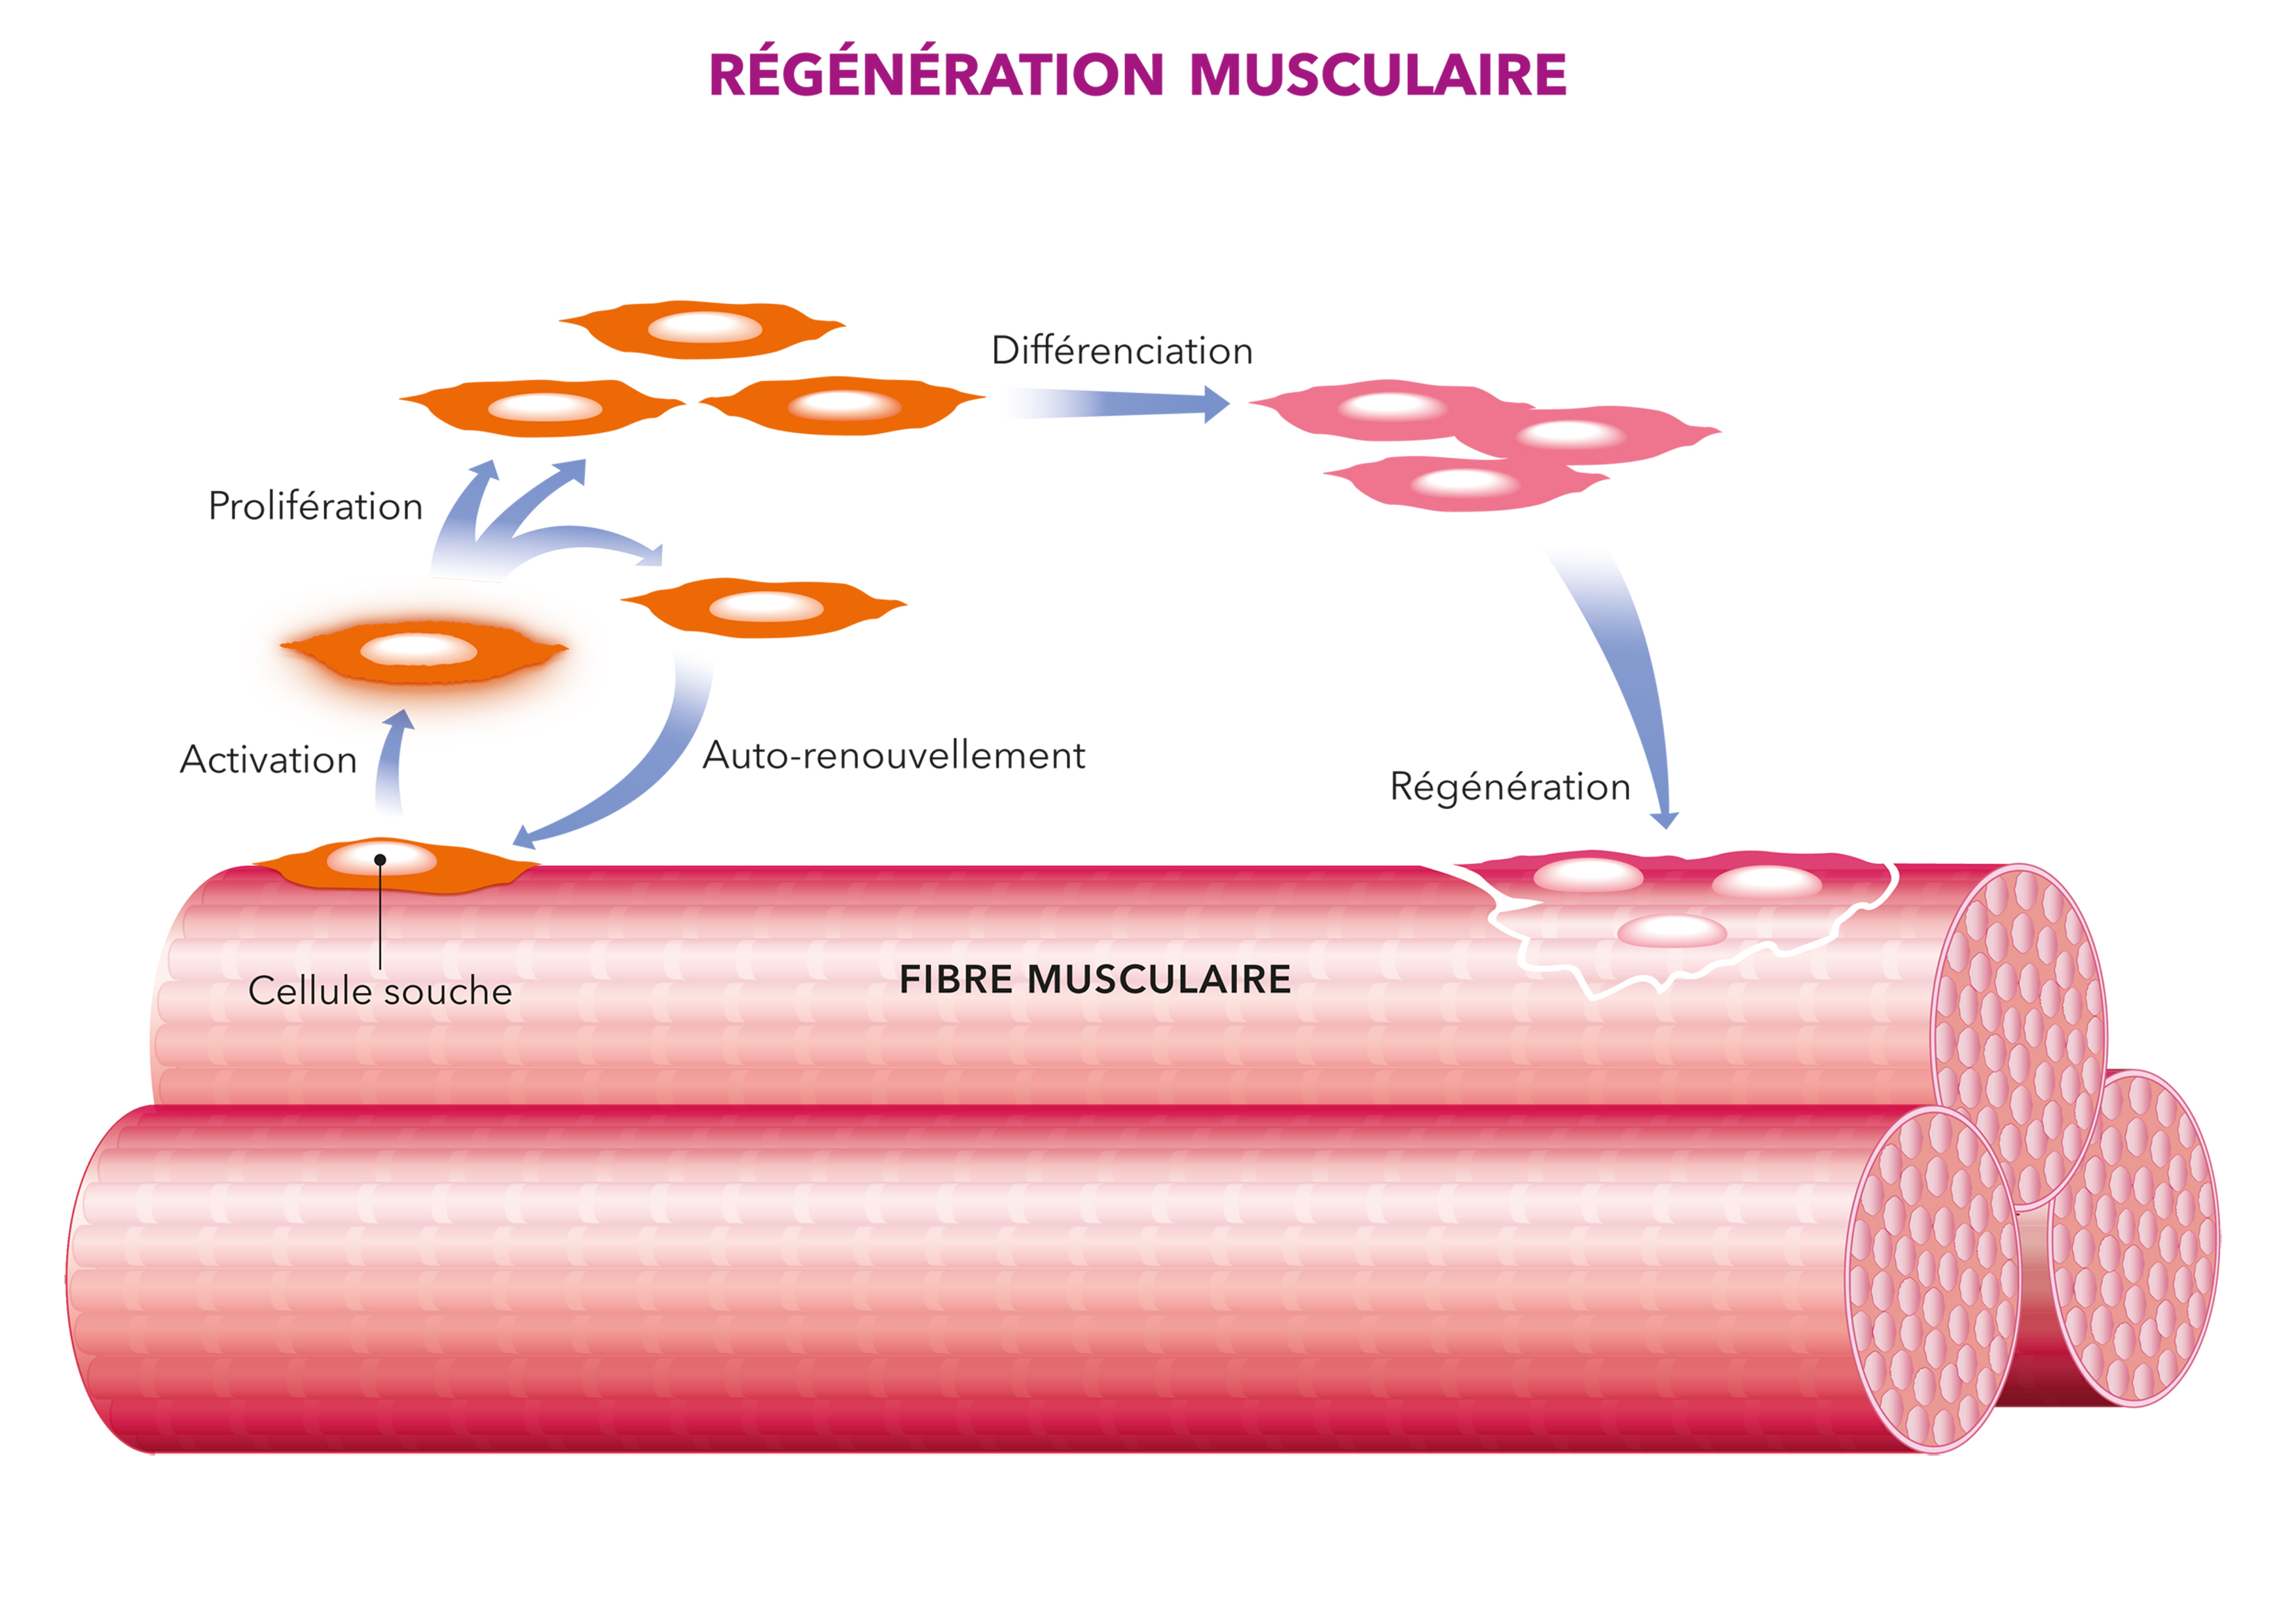 Grâce aux cellules souches, la régénération musculaire permet de réparer les fibres musculaires abimées.